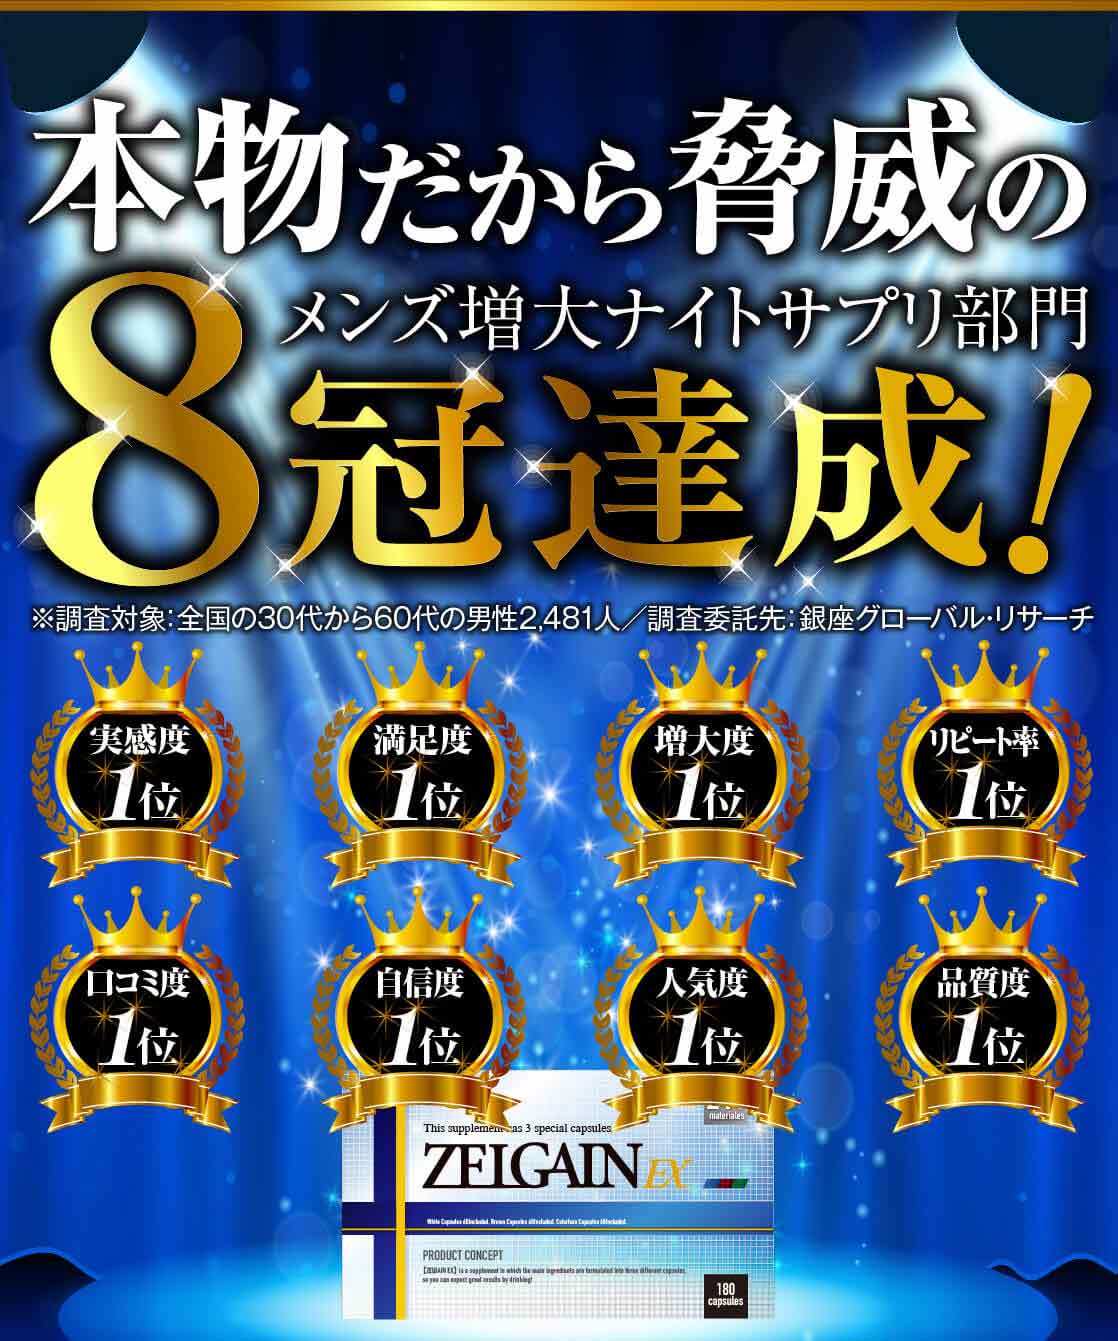 ZELGAIN EX 8冠達成